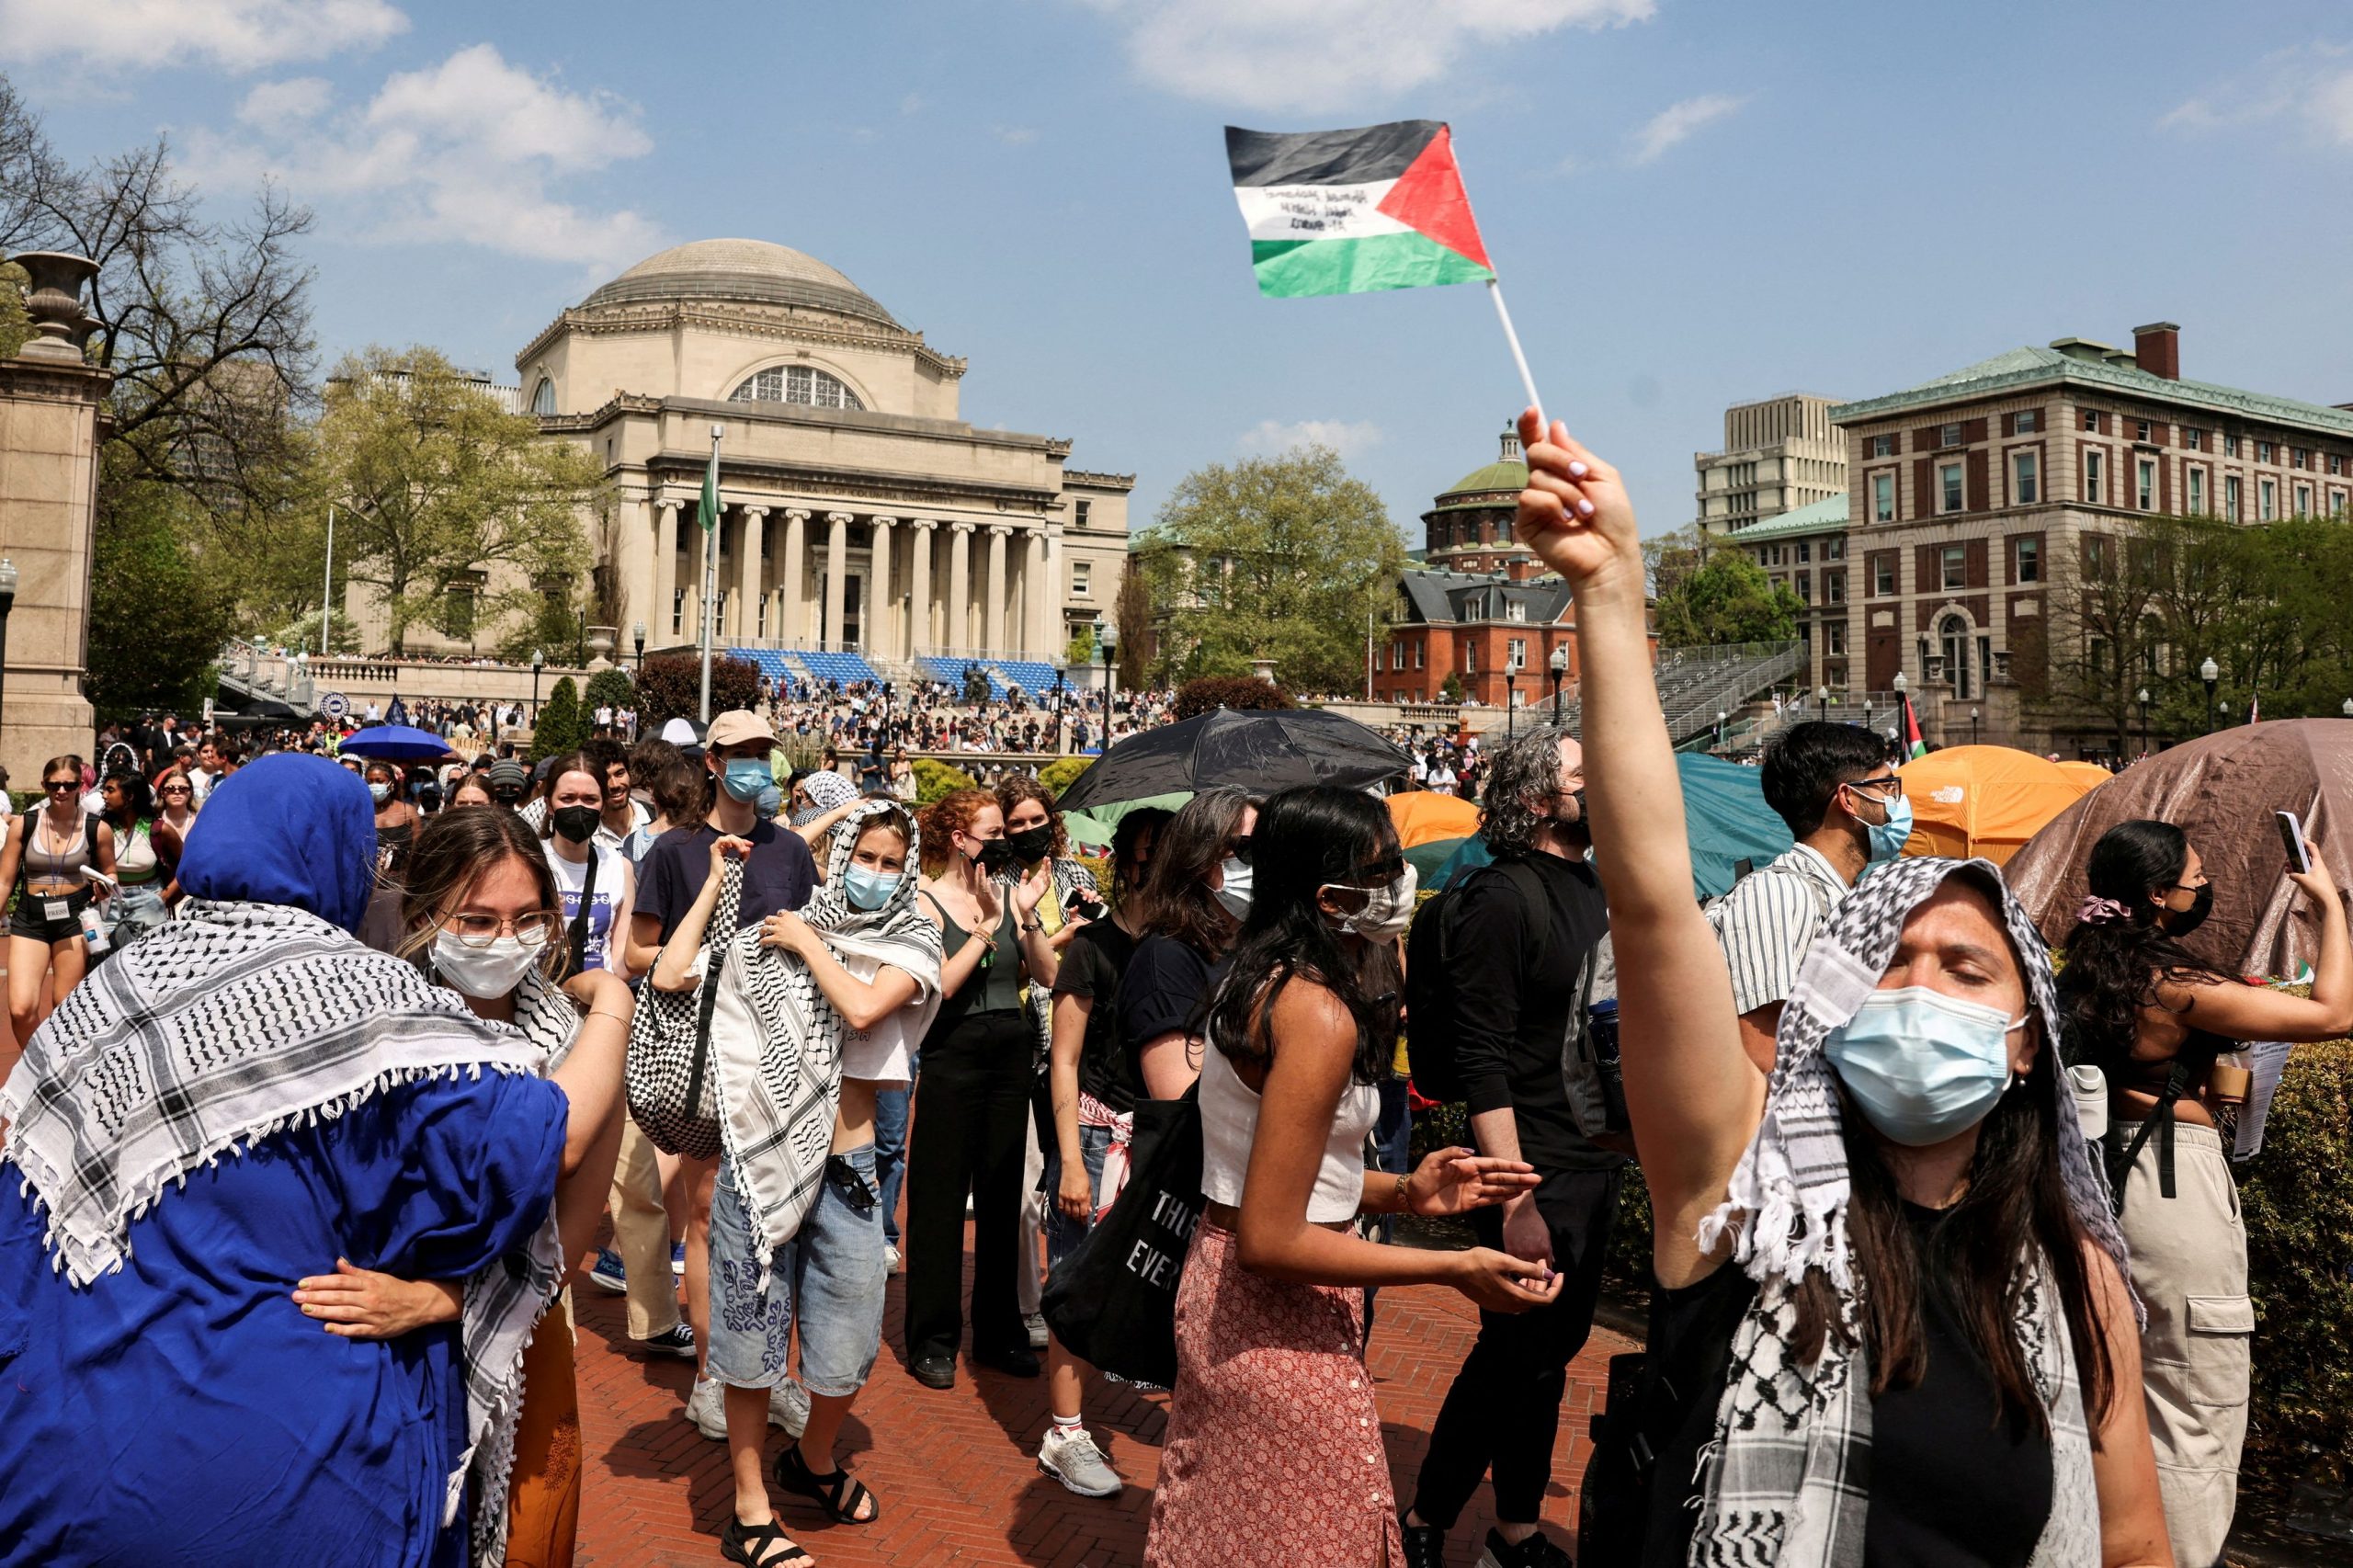 ΗΠΑ: «Μπλόκο» εργοδοτών σε αποφοίτους πανεπιστημίου που διαδήλωσαν υπέρ των Παλαιστινίων